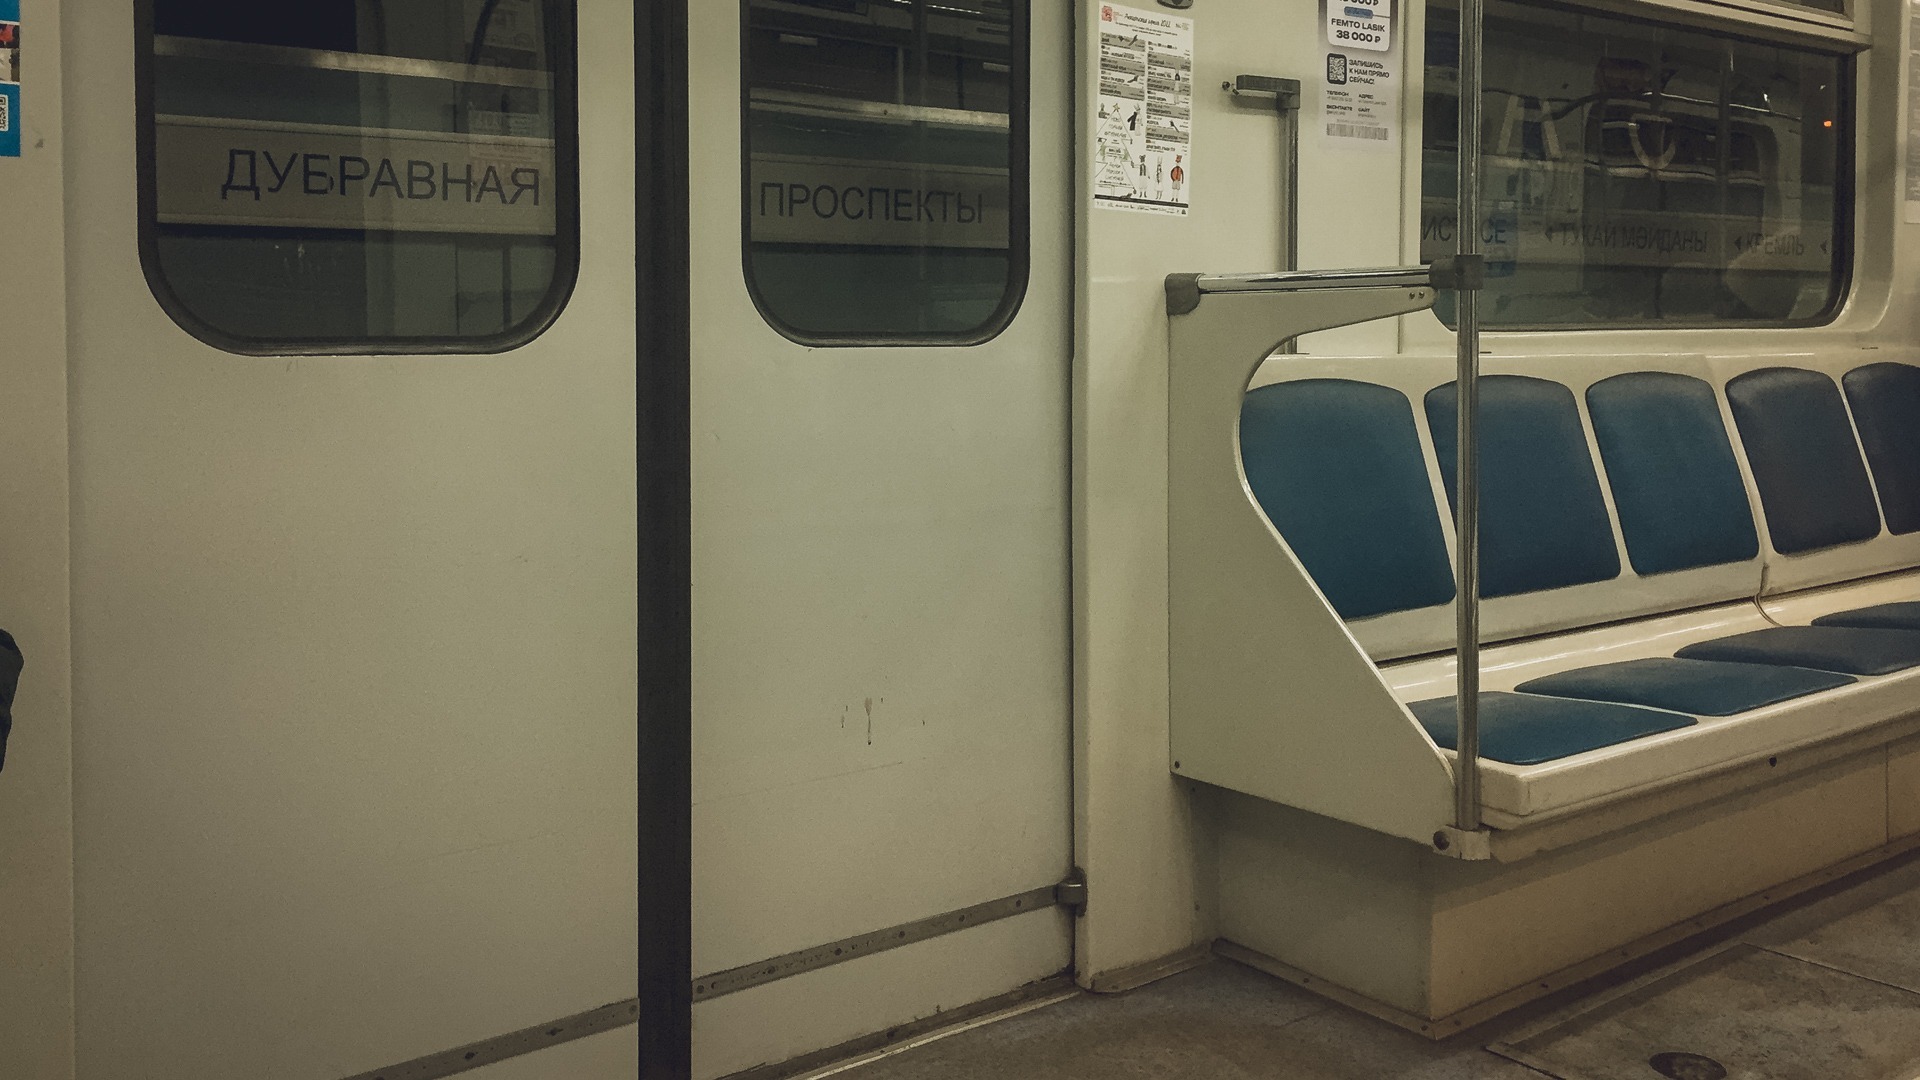 Очевидцы рассказали подробности падения беременной под состав метро в Екатеринбурге